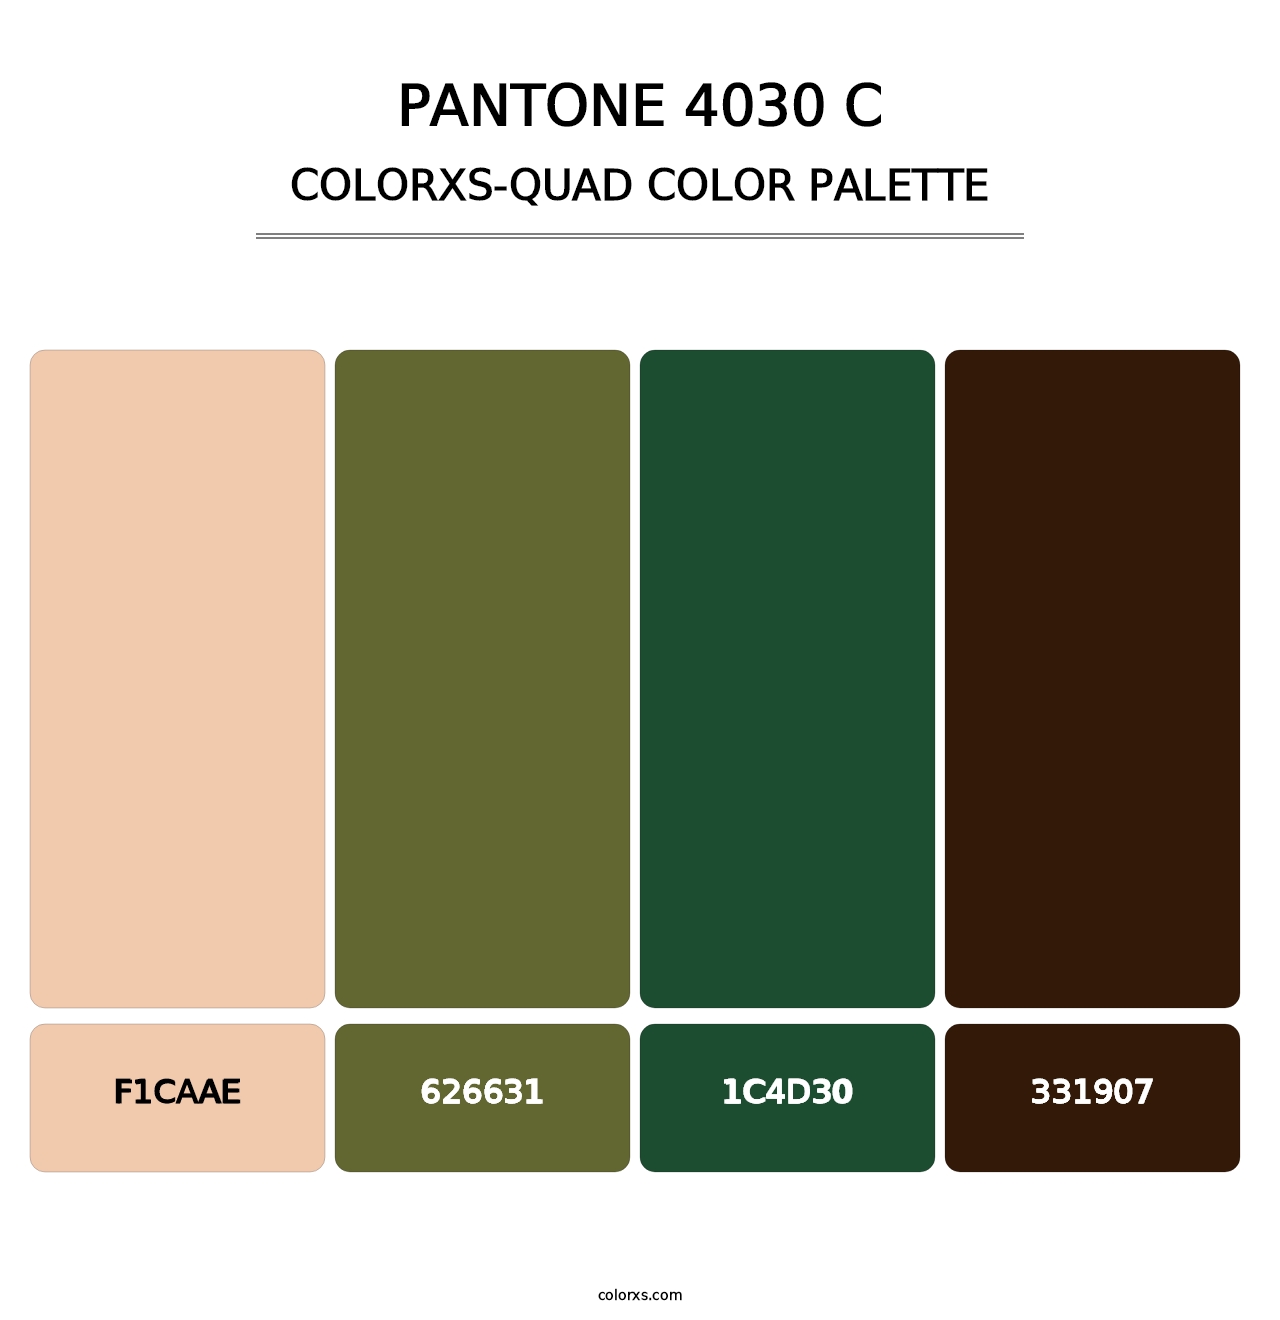 PANTONE 4030 C - Colorxs Quad Palette